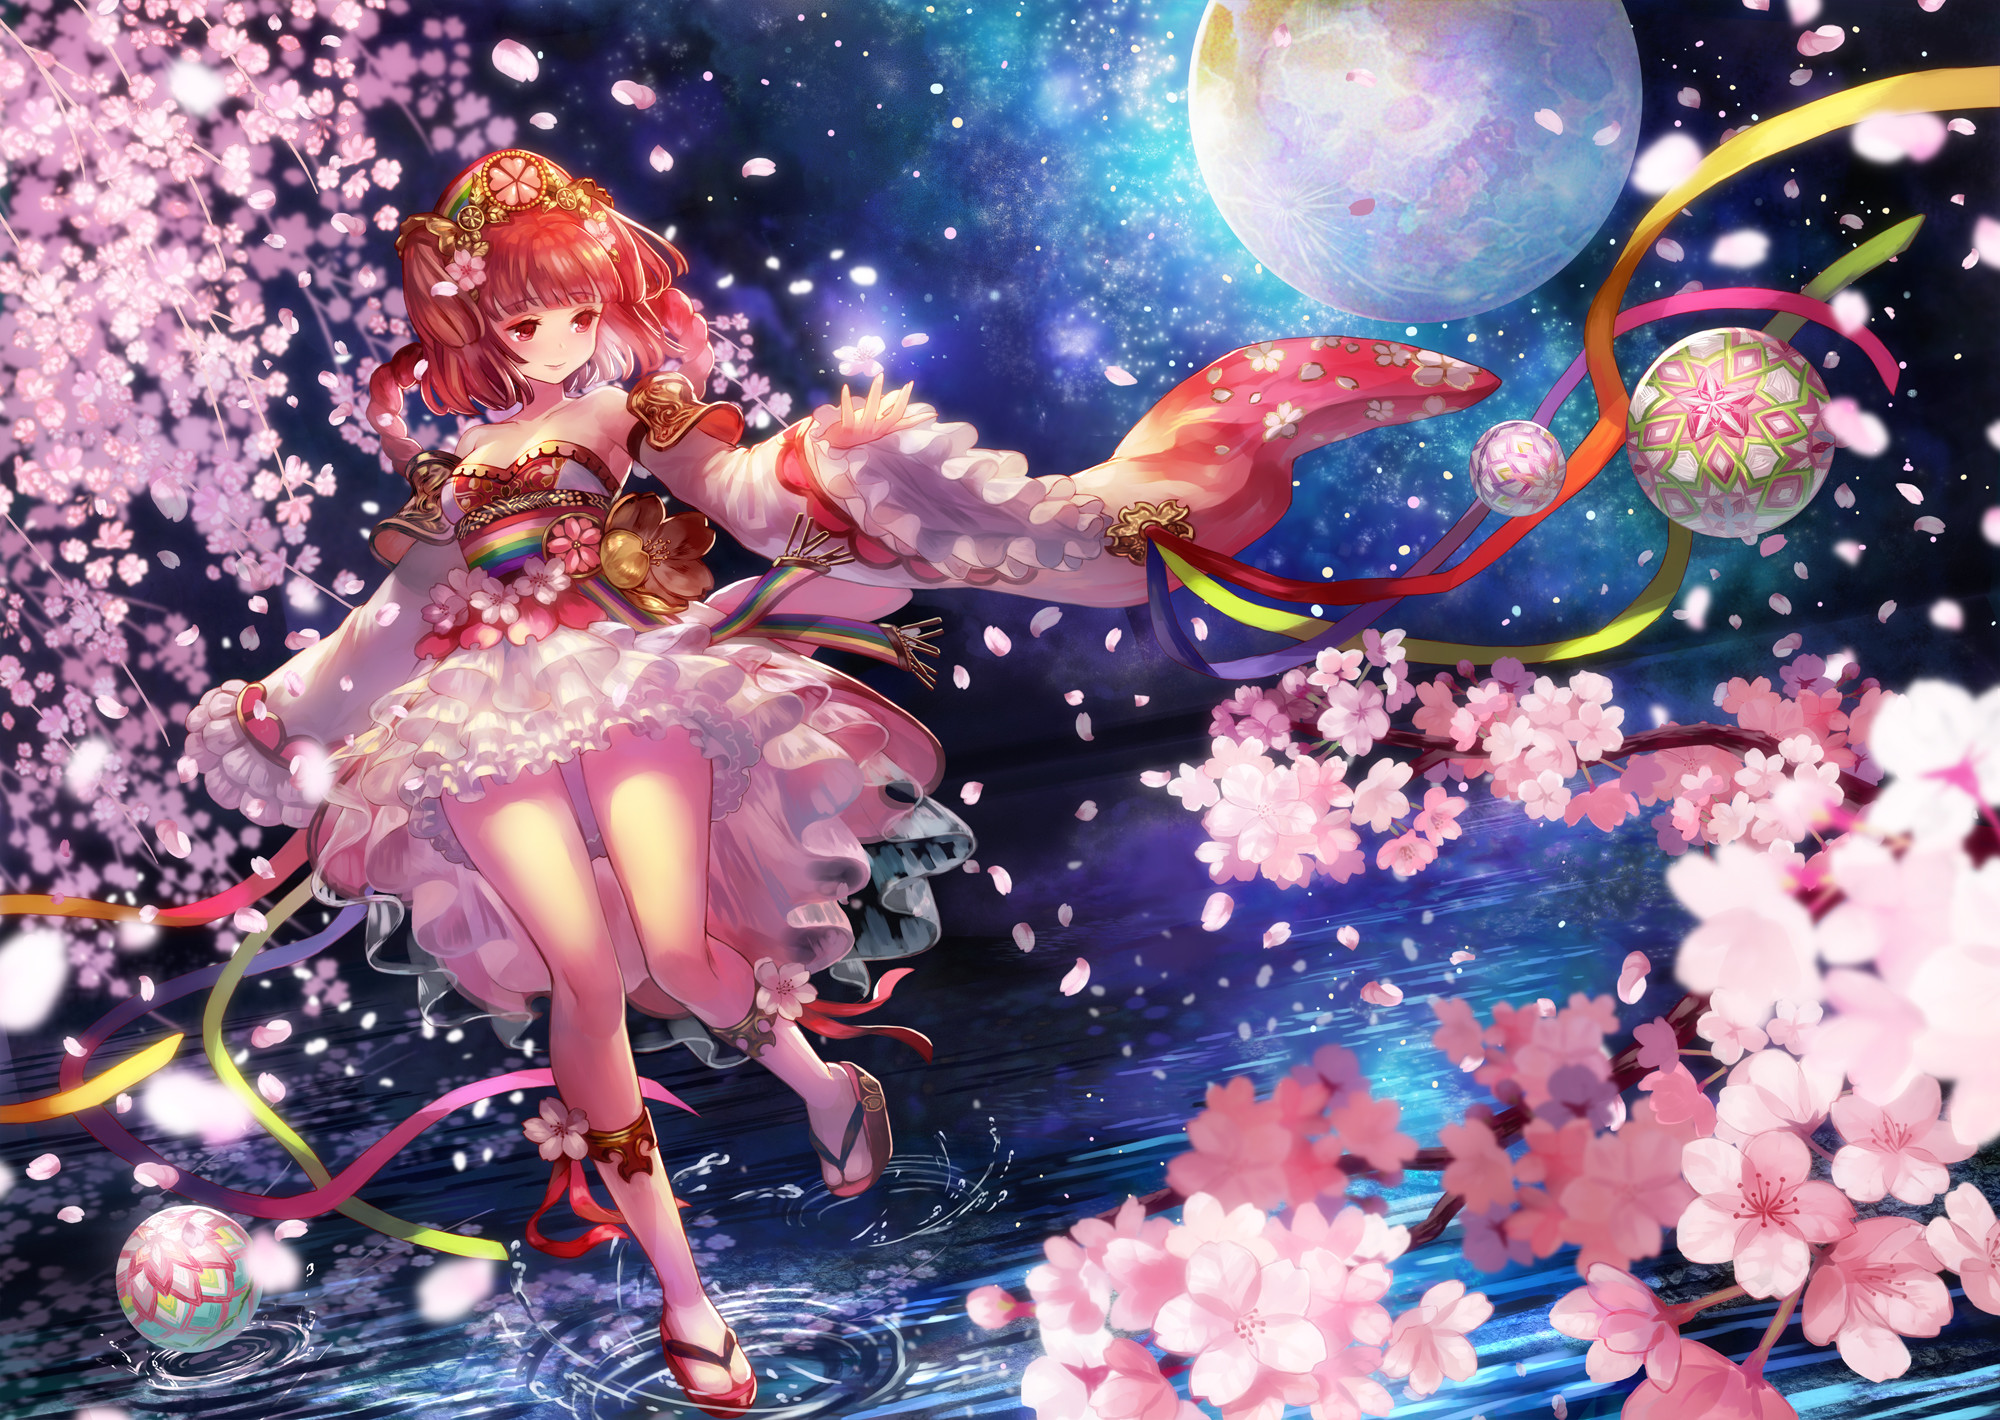 Download Sakura Anime Cherry Blossom Tree Illustration Wallpaper   Wallpaperscom